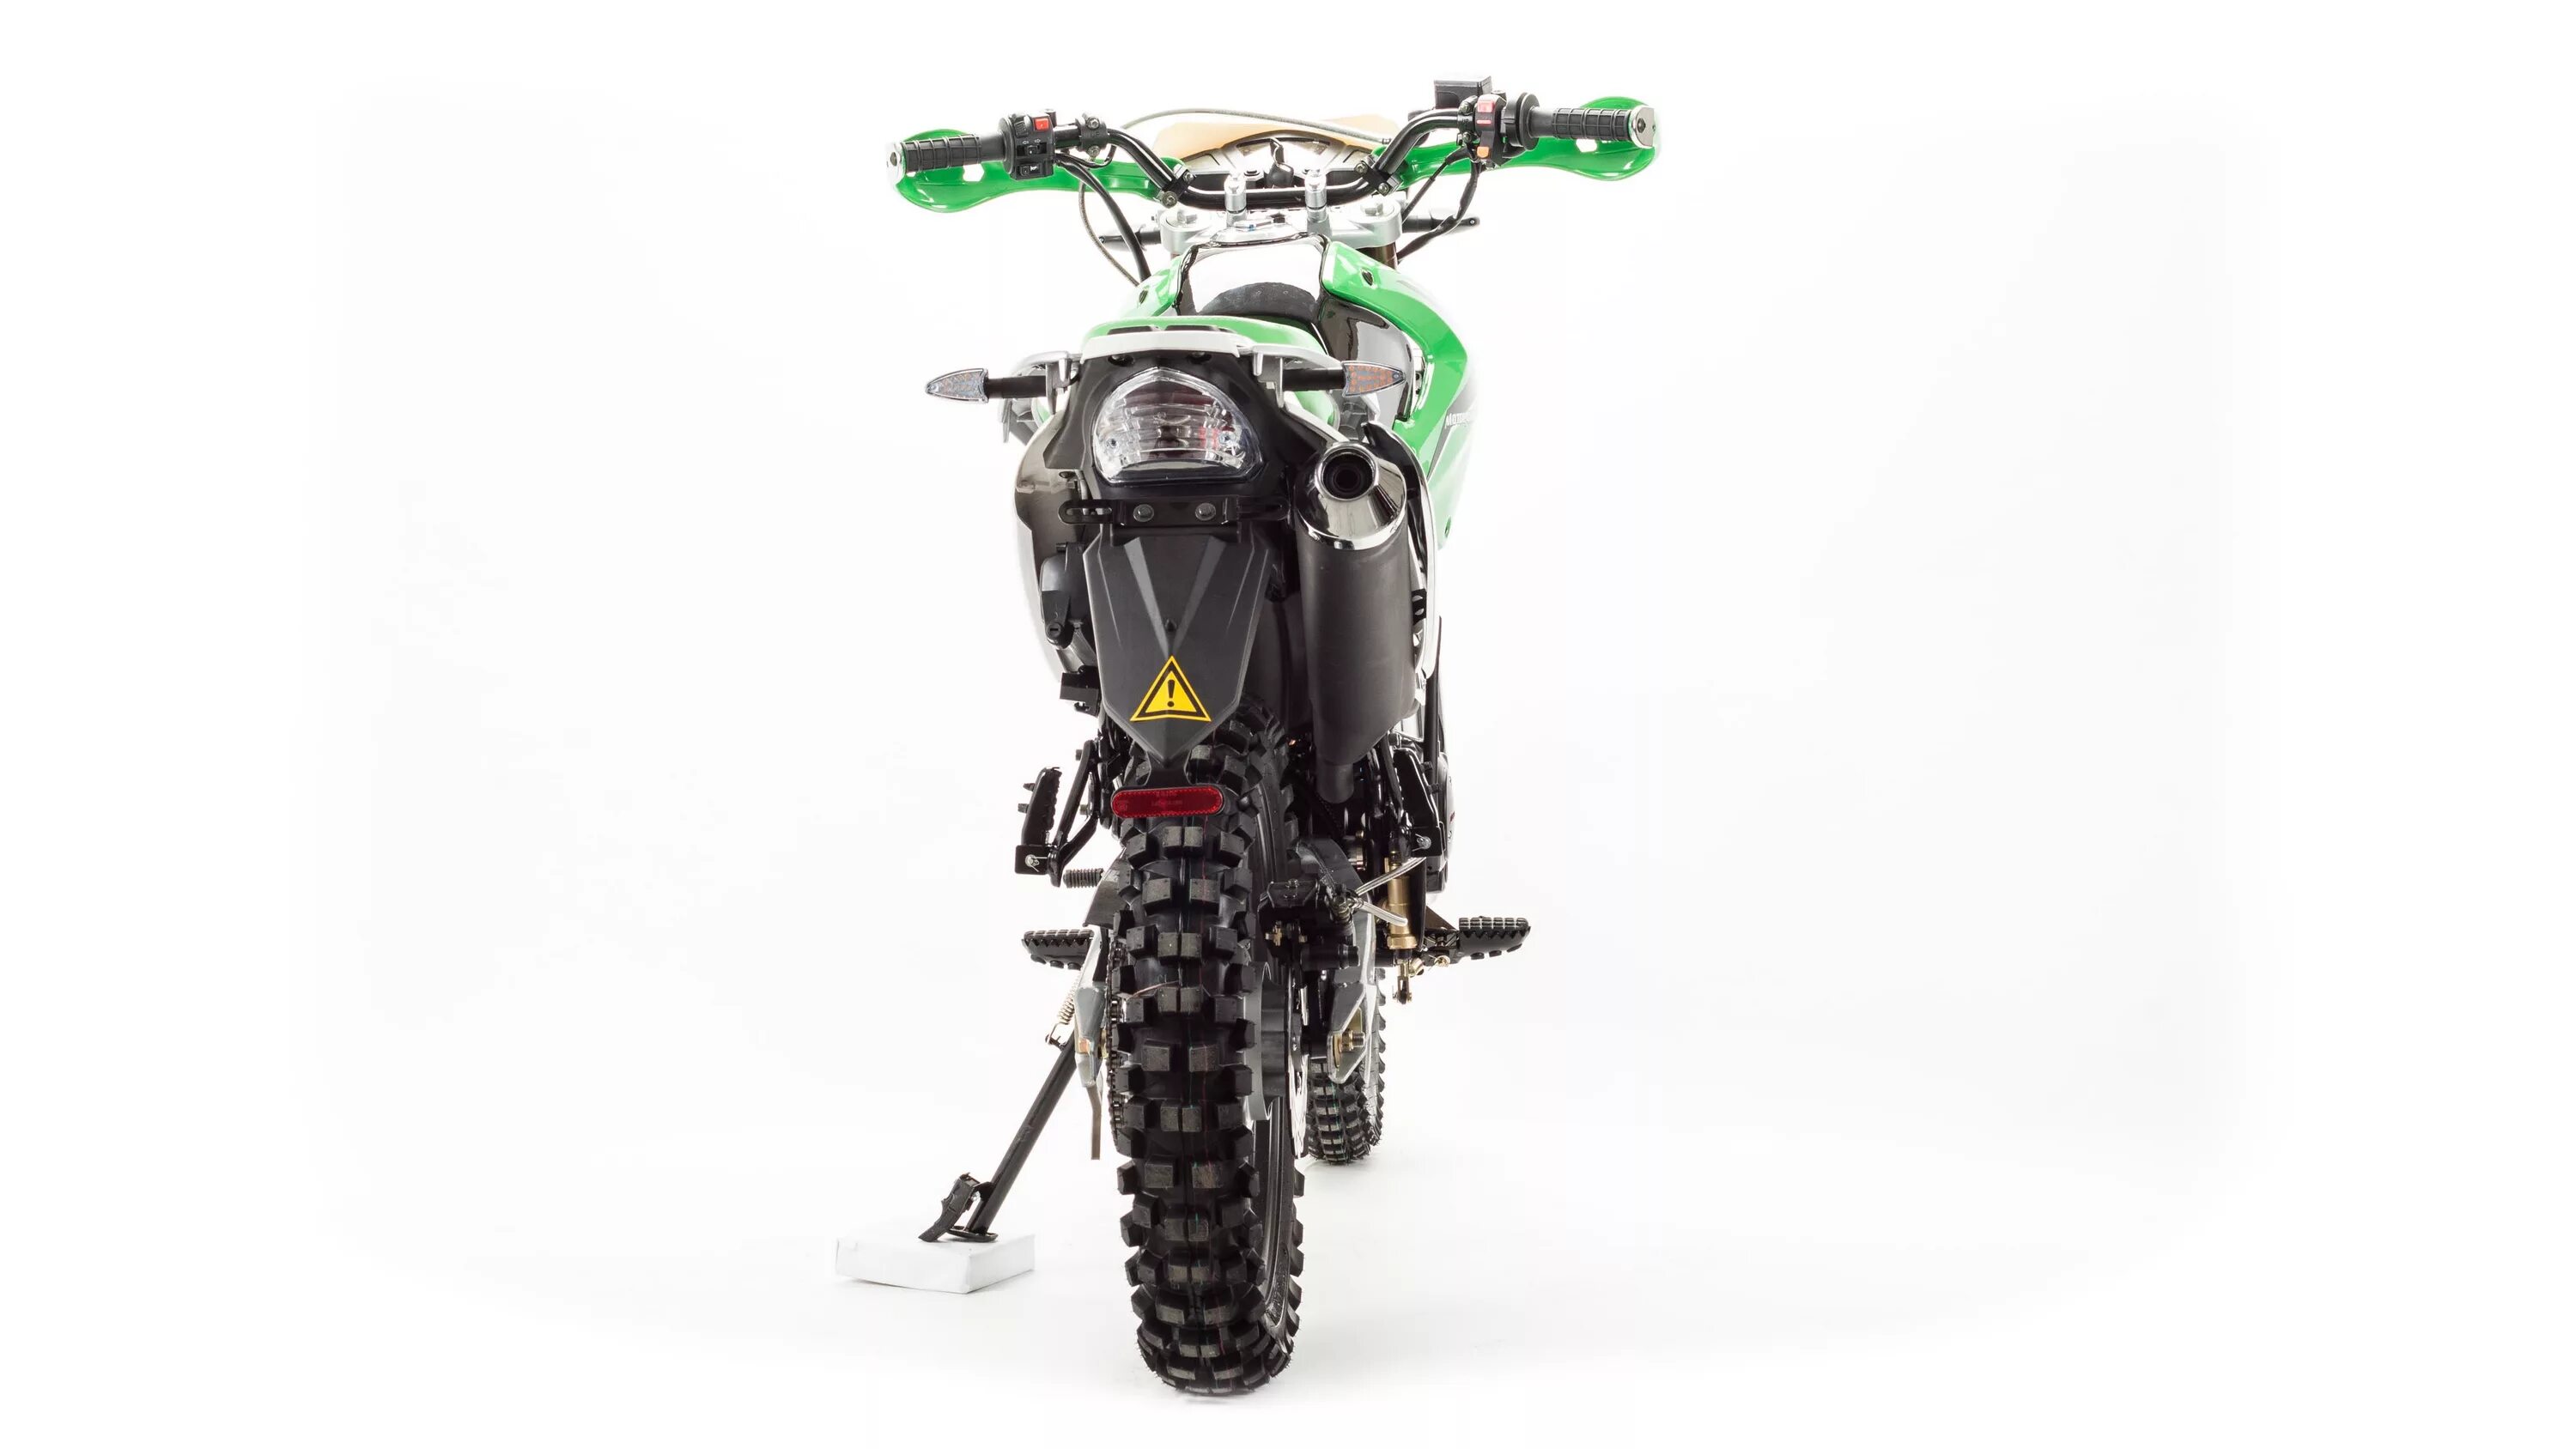 Мотоцикл кросс Motoland Enduro lt 250. Motoland lt250 Enduro зеленый. Motoland XR 250 Enduro. Мотоцикл Motoland Enduro lt 250 зеленый.